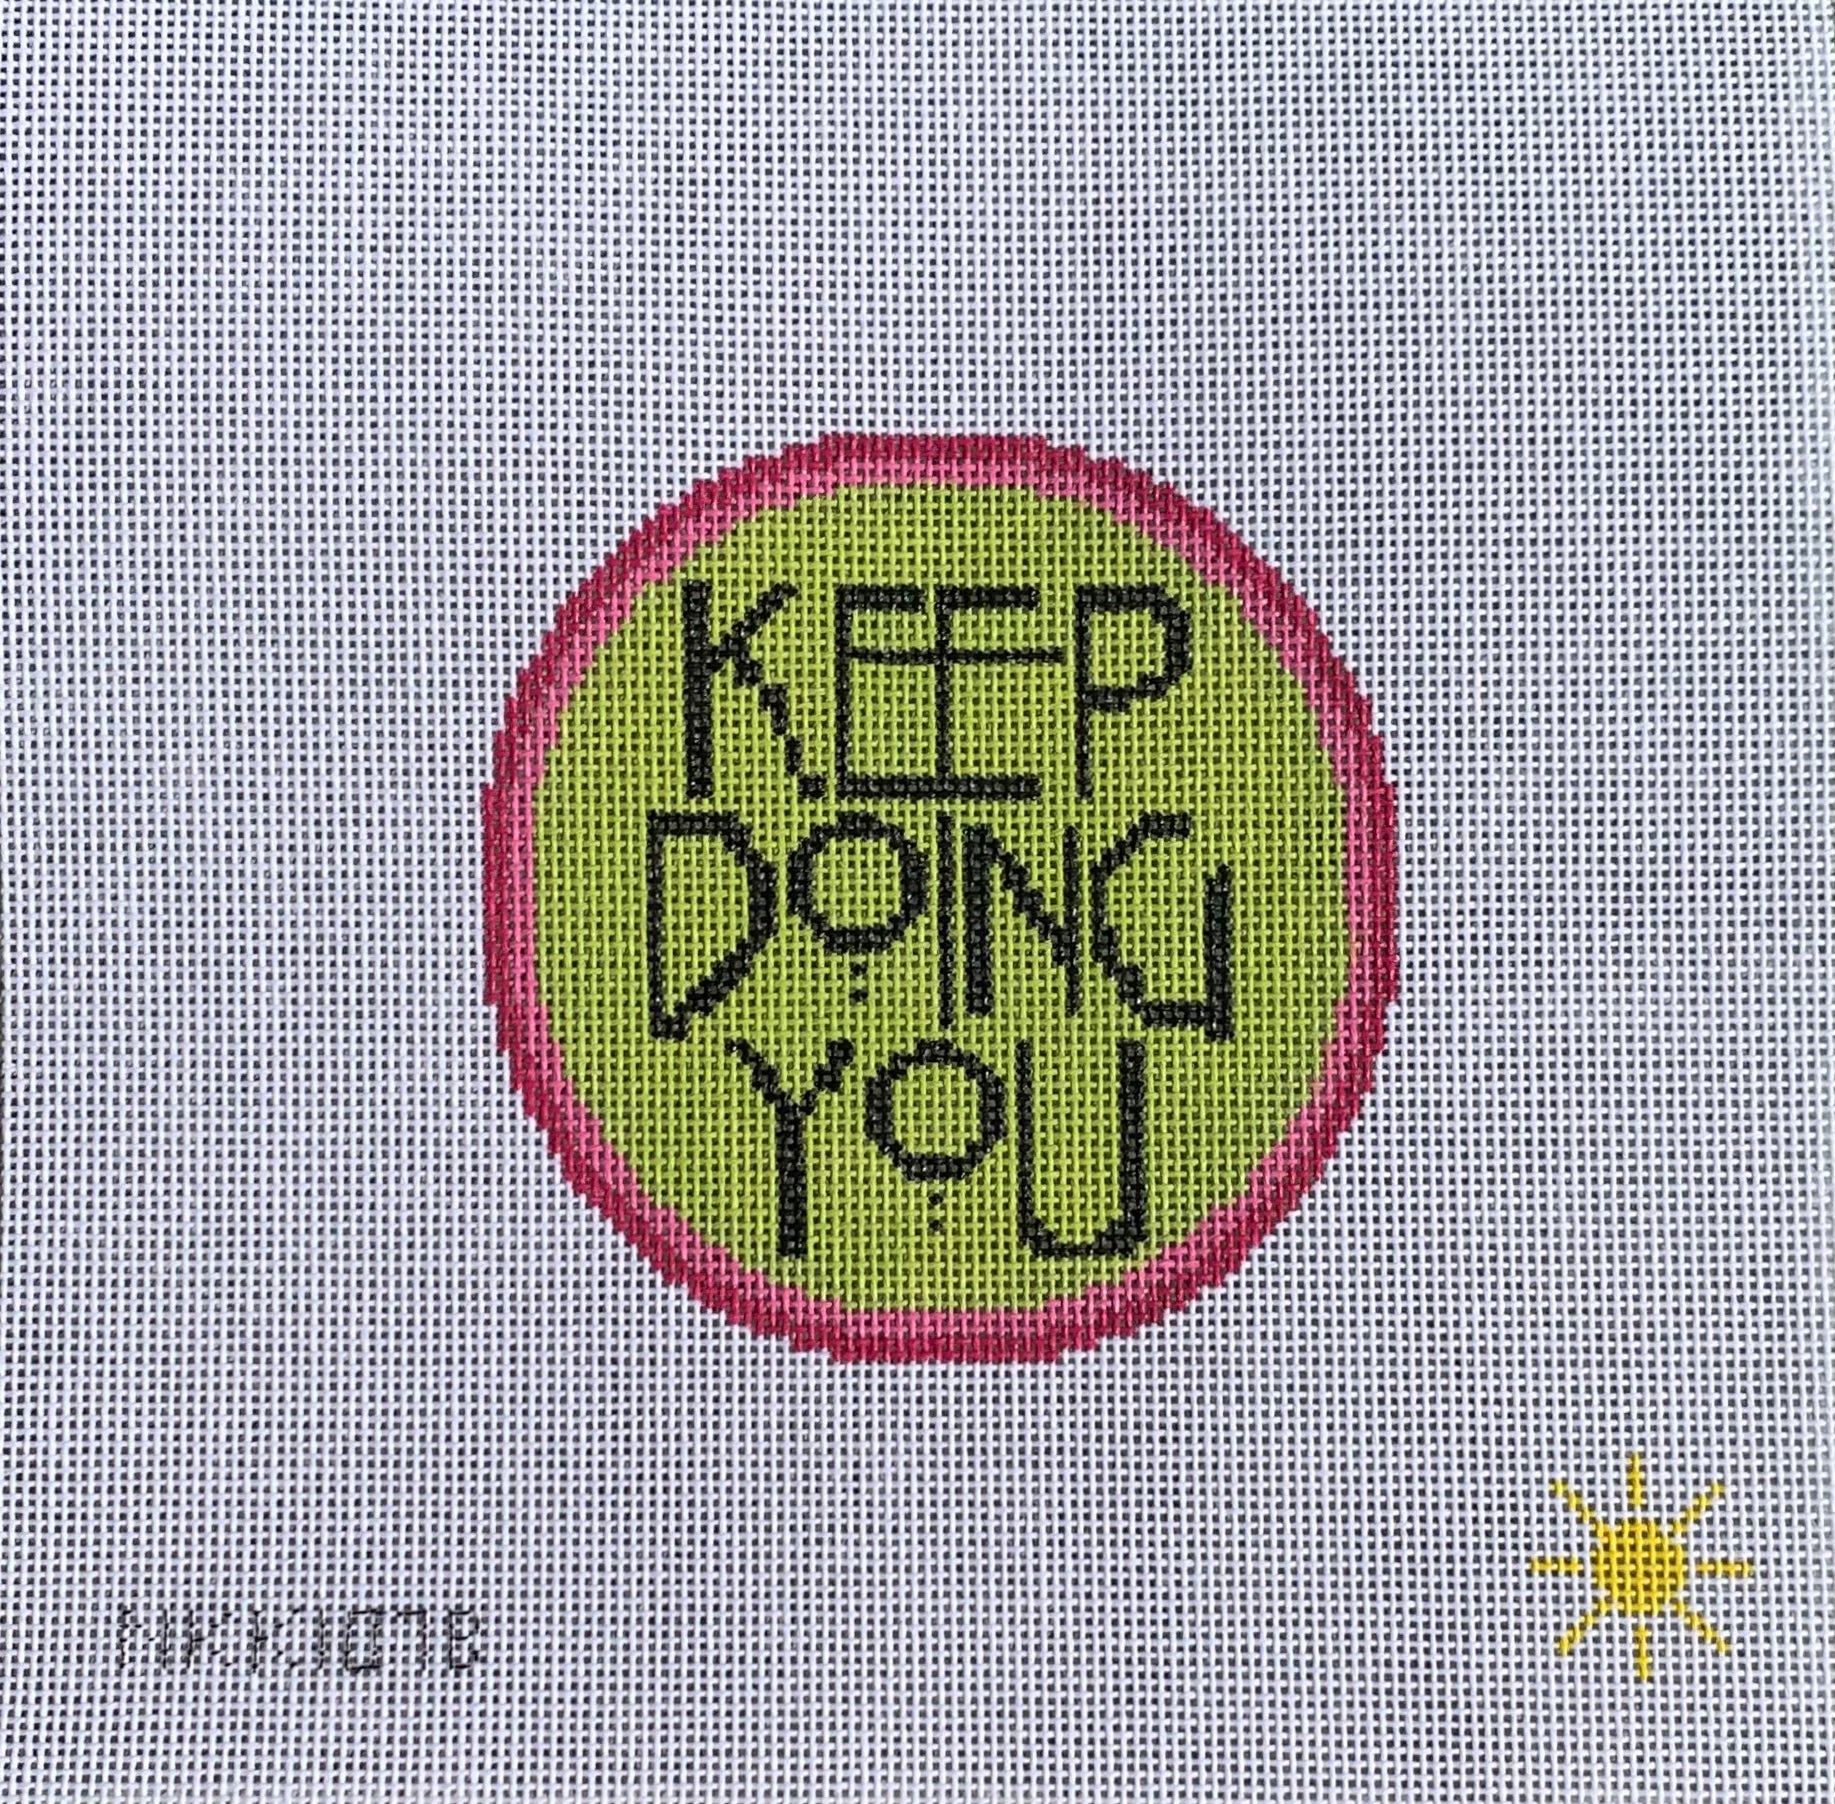 Keep Doing You